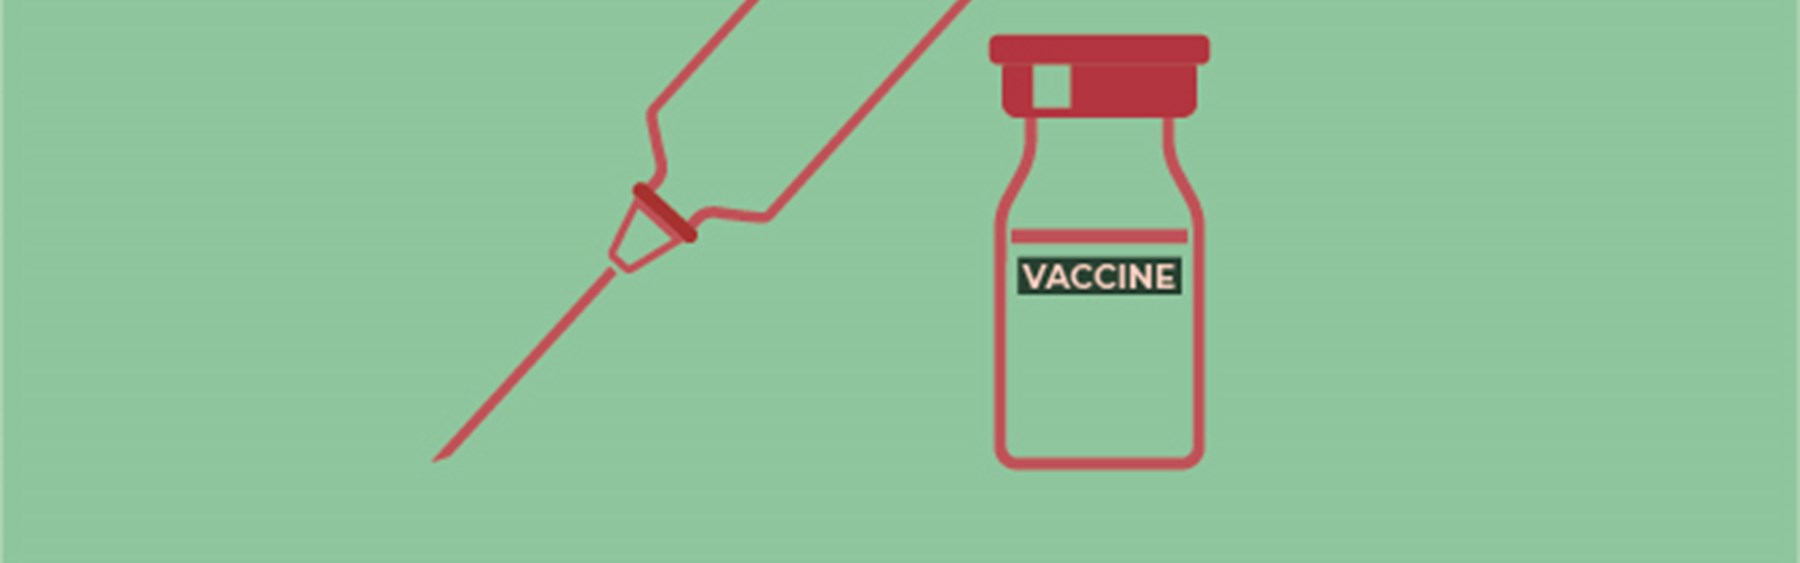 Nyt om vacciner og vaccination